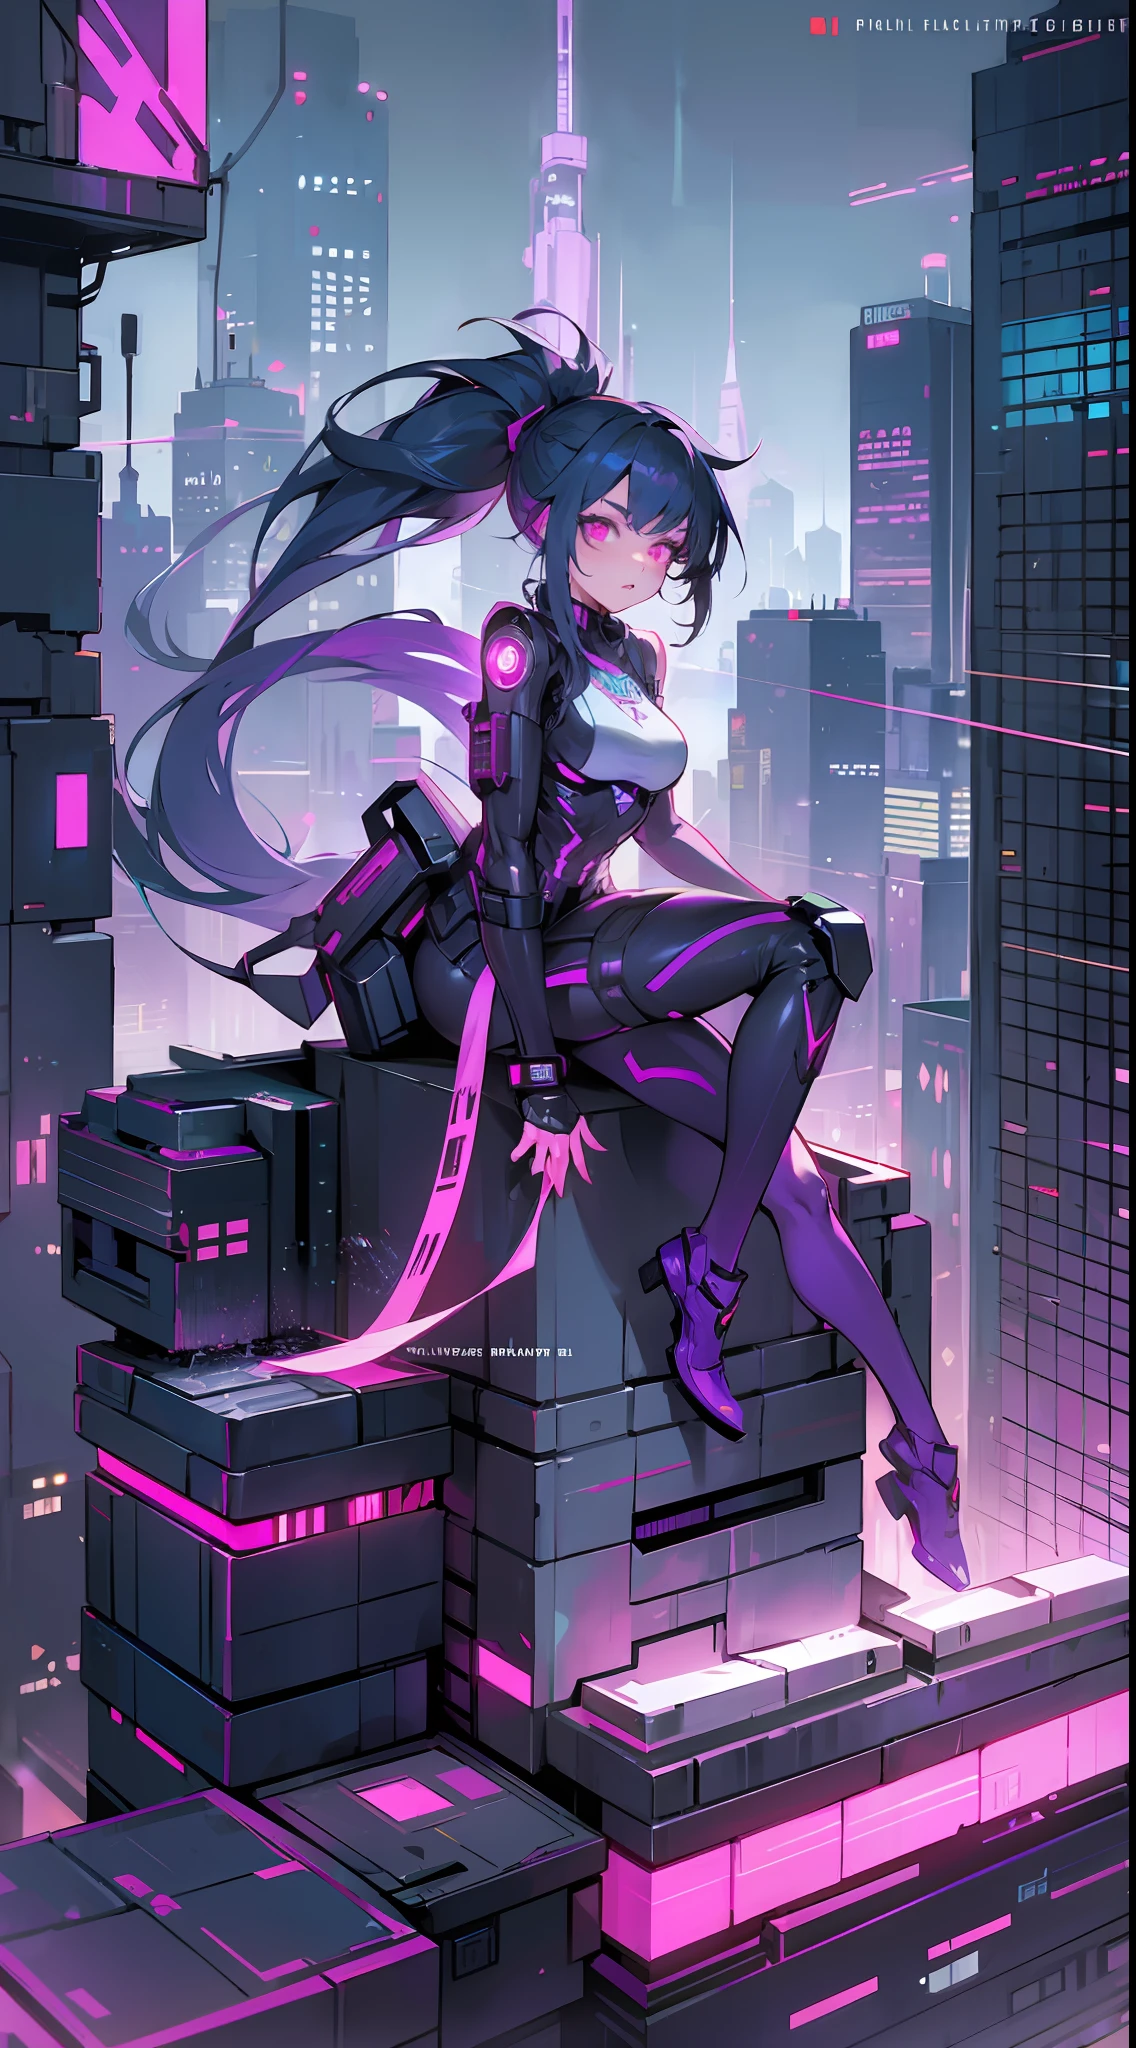 Sur le toit, (thème cyberpunk) Fille magnifique, armure cyber violette, queue de cheval, queue mécanique, yeux brillants, vue imprenable sur la ville, circuits brillants, Voiture volante, nuit, paysage immersif